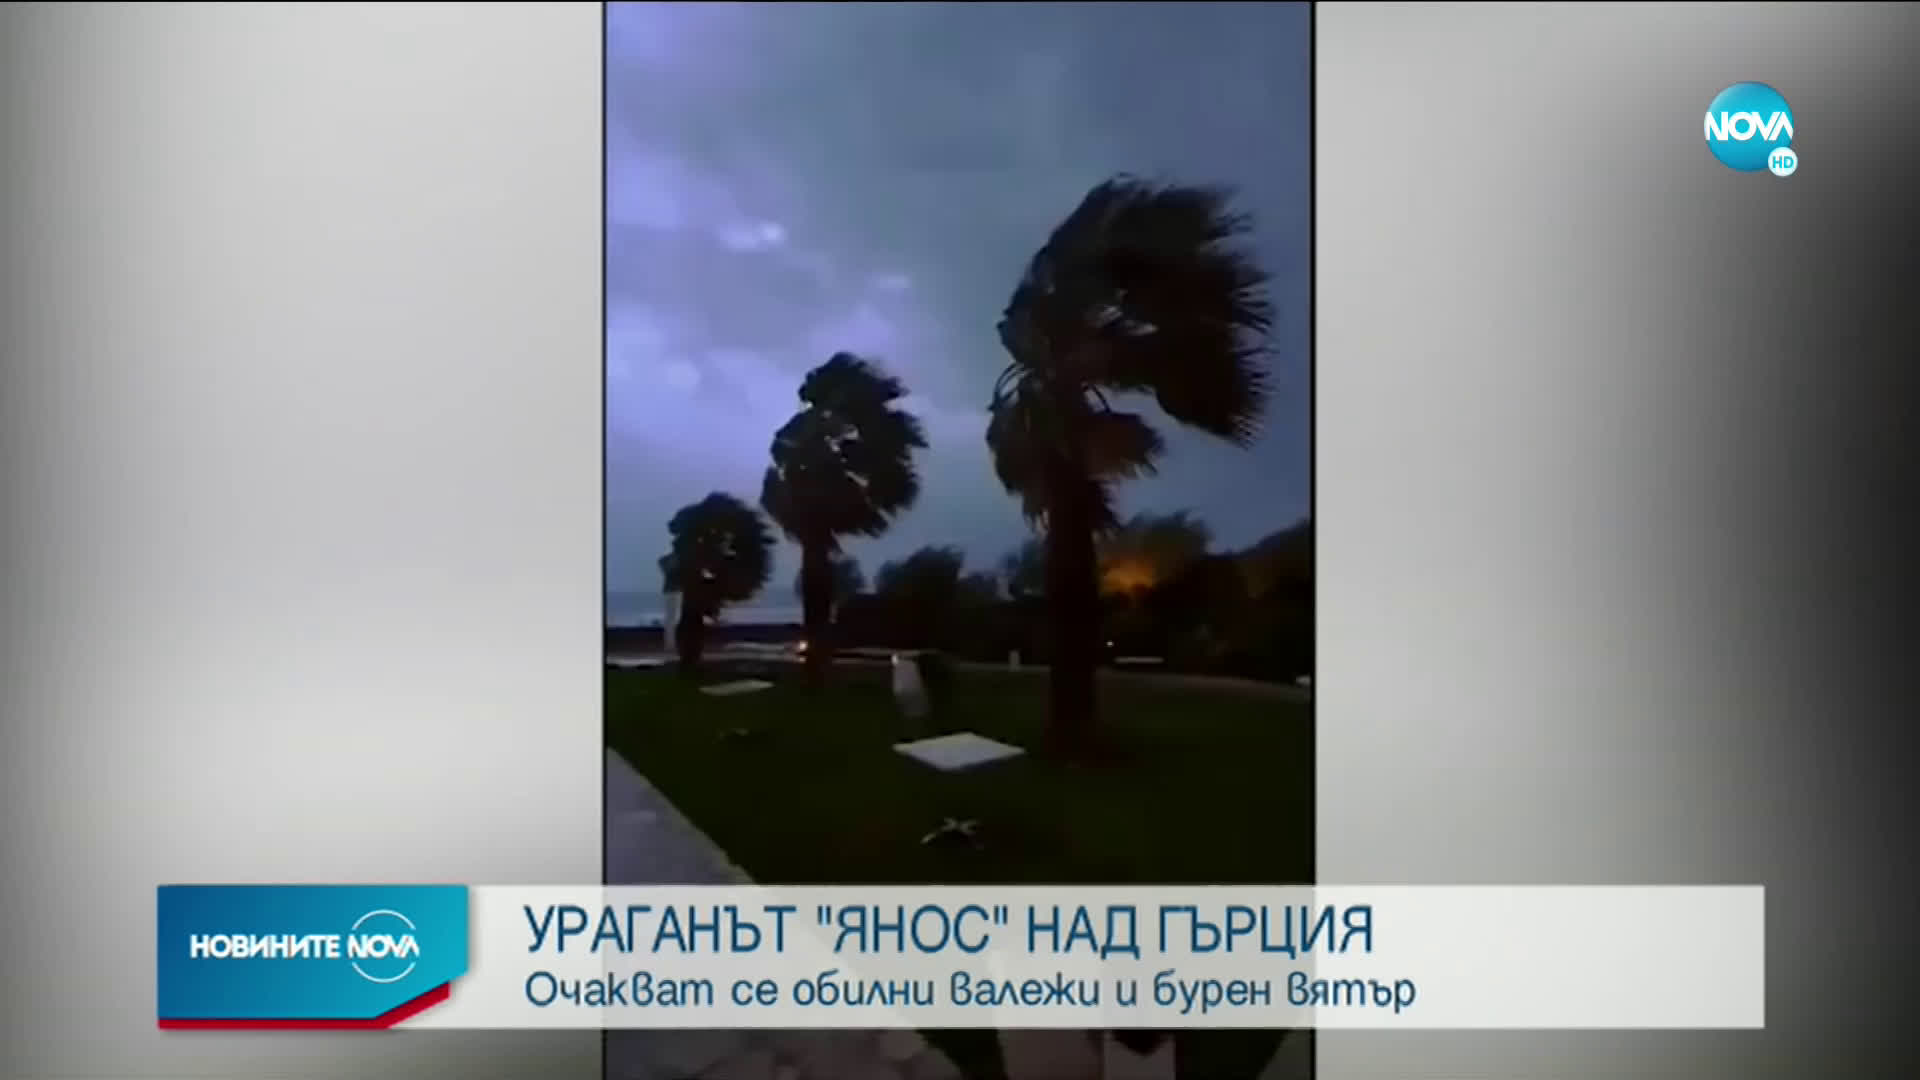 Ураганът "Янос" удря Гърция